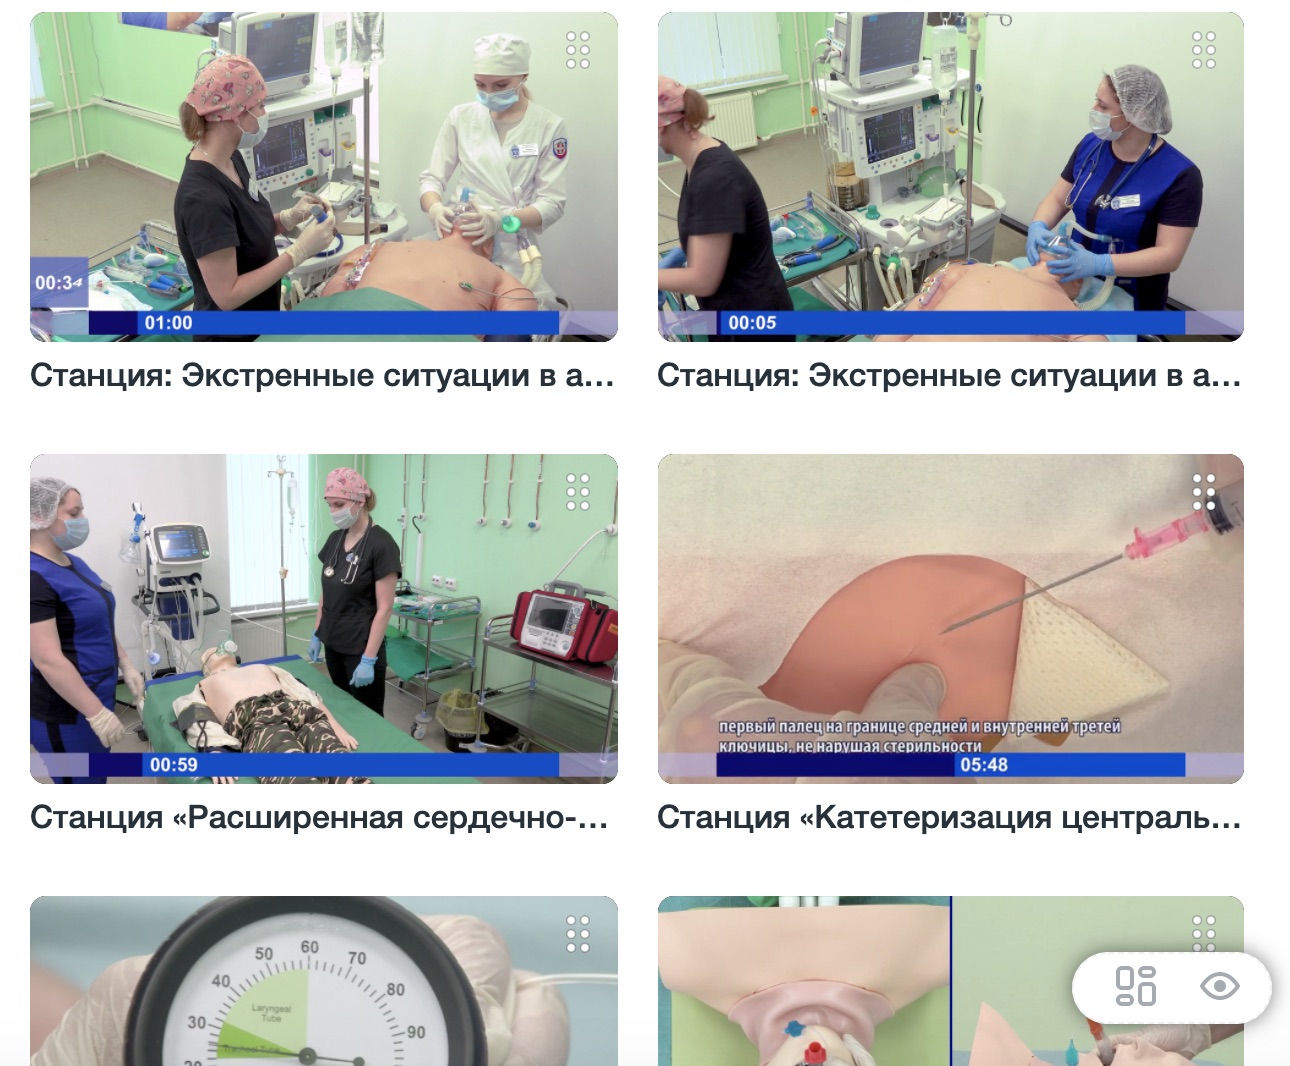 Видео для обучения и подготовке к аккредитации по анестезиологии-реаниматологии